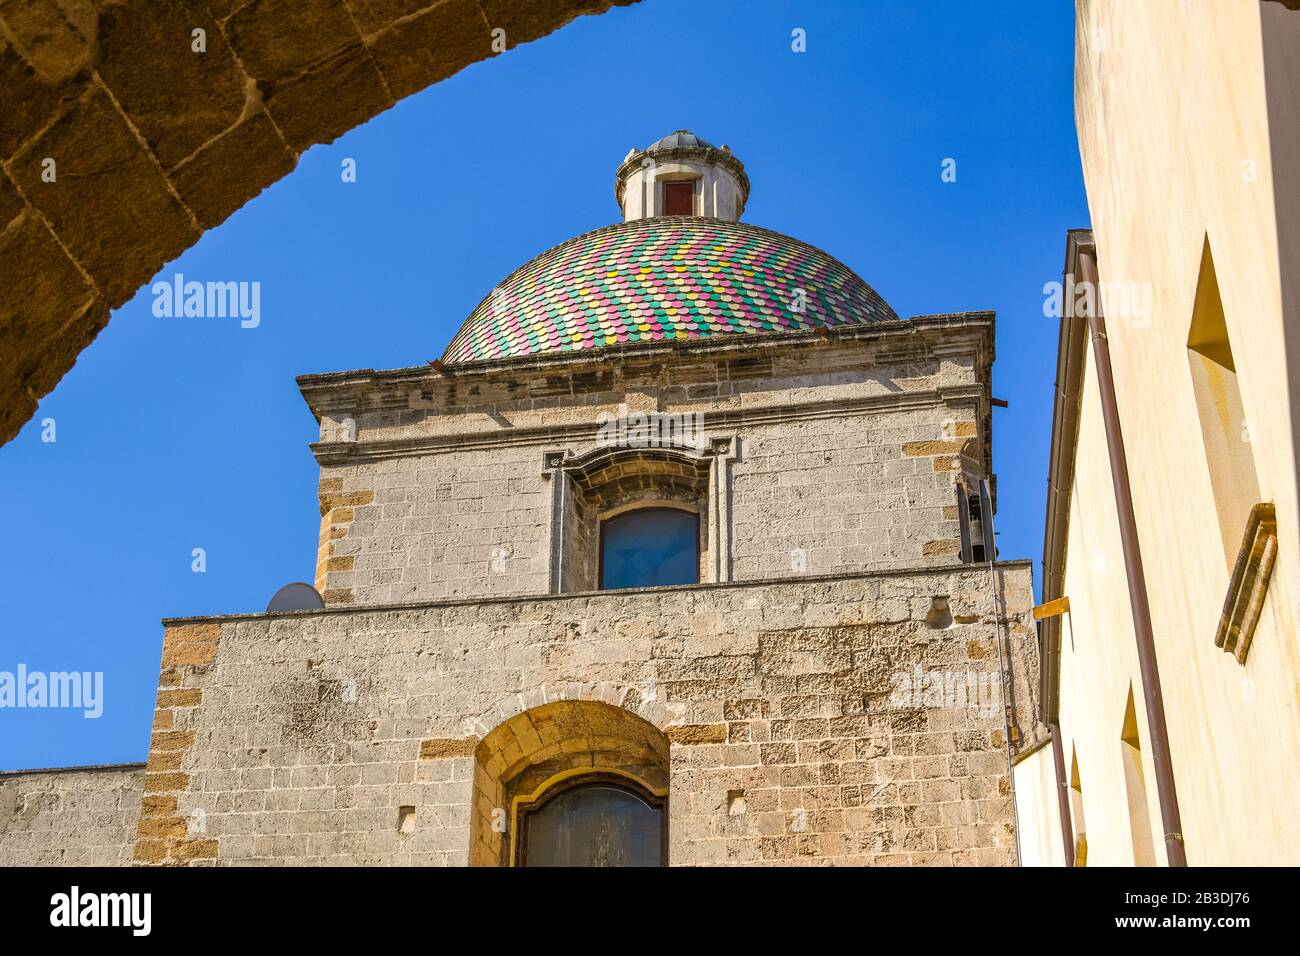 Die farbenfrohe Kuppel der Kirche St. Michele Arcangelo in der Küstenstadt Brindisi, Italien, im Süden Apuliens Stockfoto